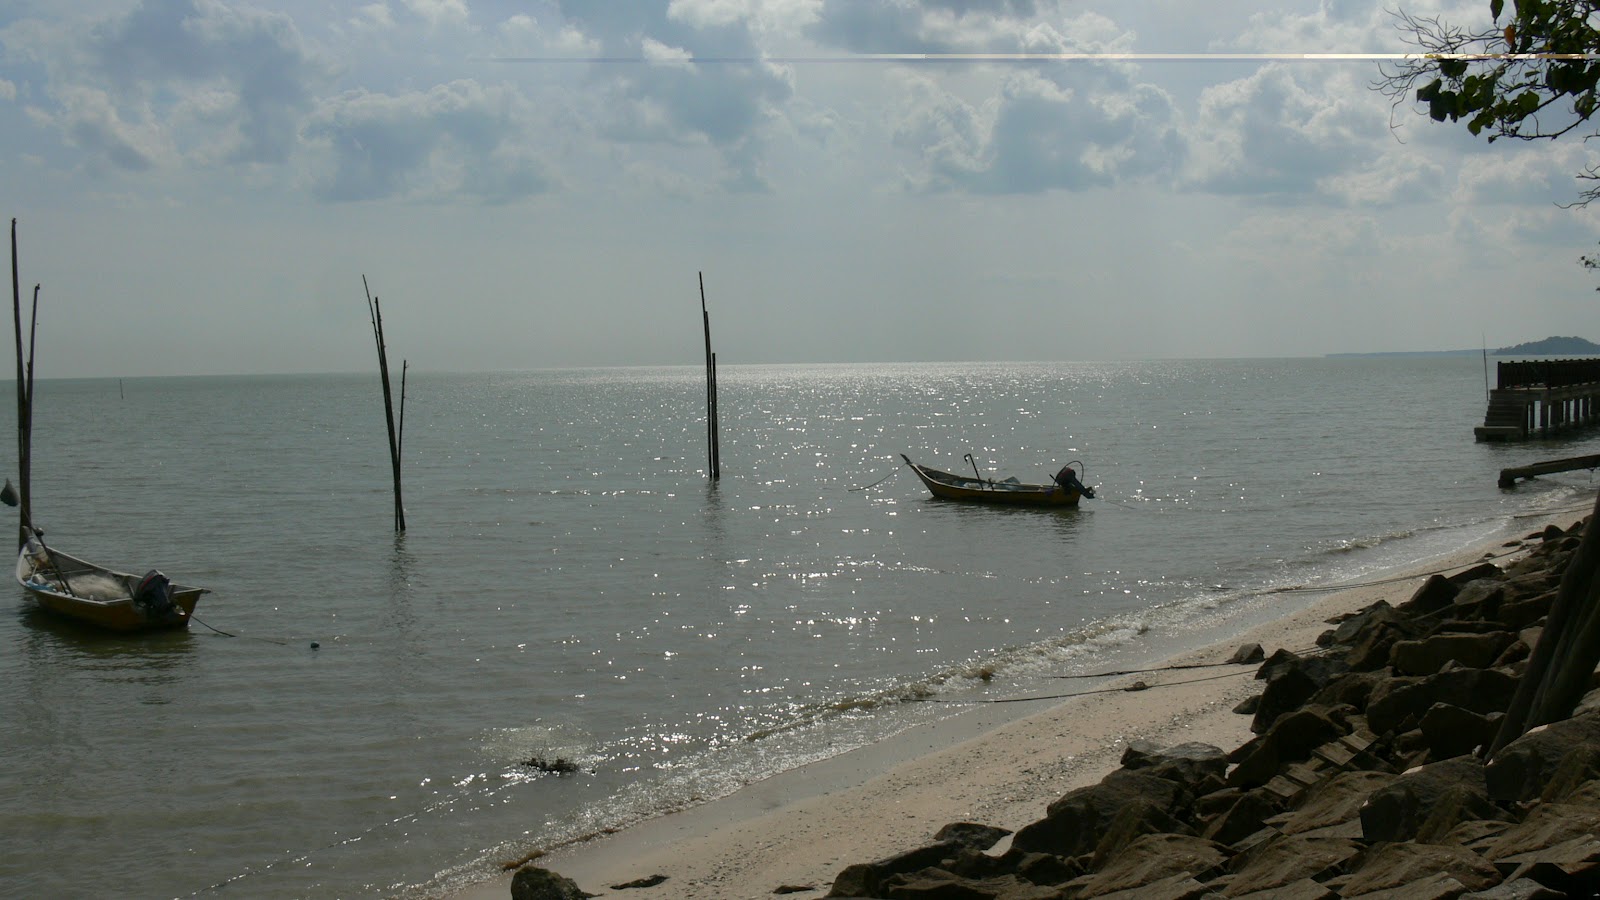 Foto Memori Ku: Kg.Pantai Sungai Lurus Senggarang